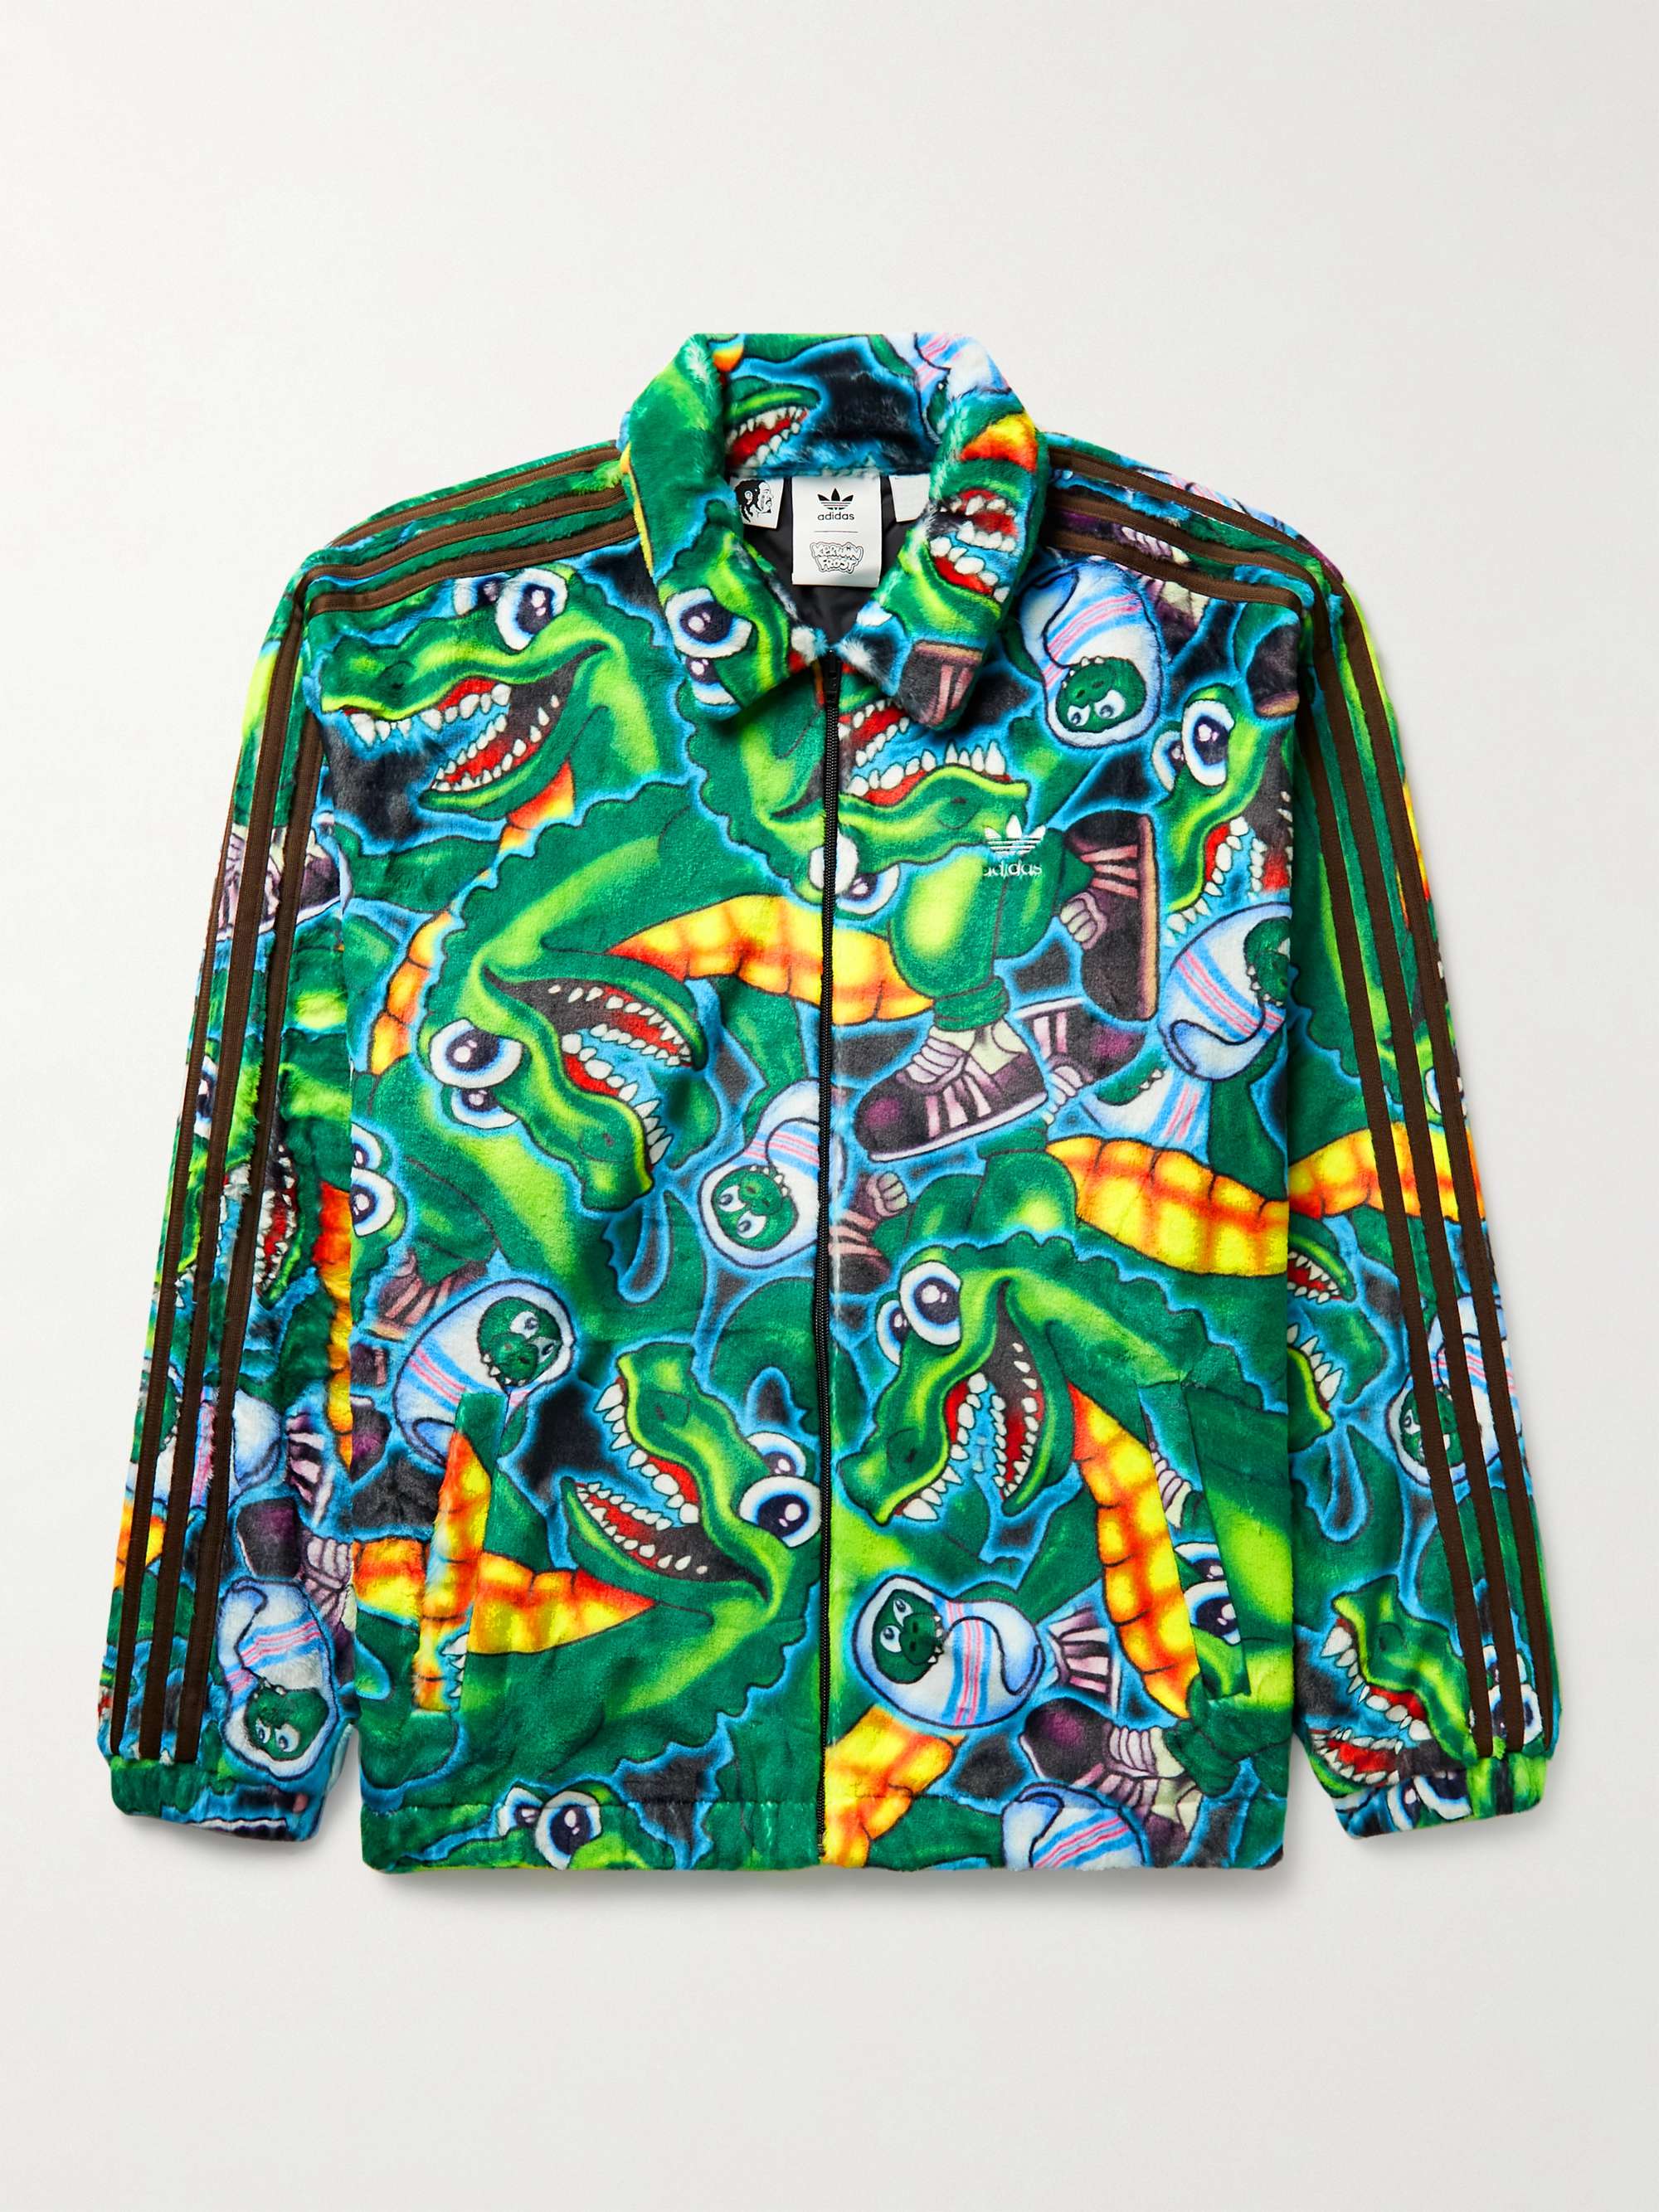 Green + Kerwin Frost Printed Fleece Jacket | ADIDAS CONSORTIUM 